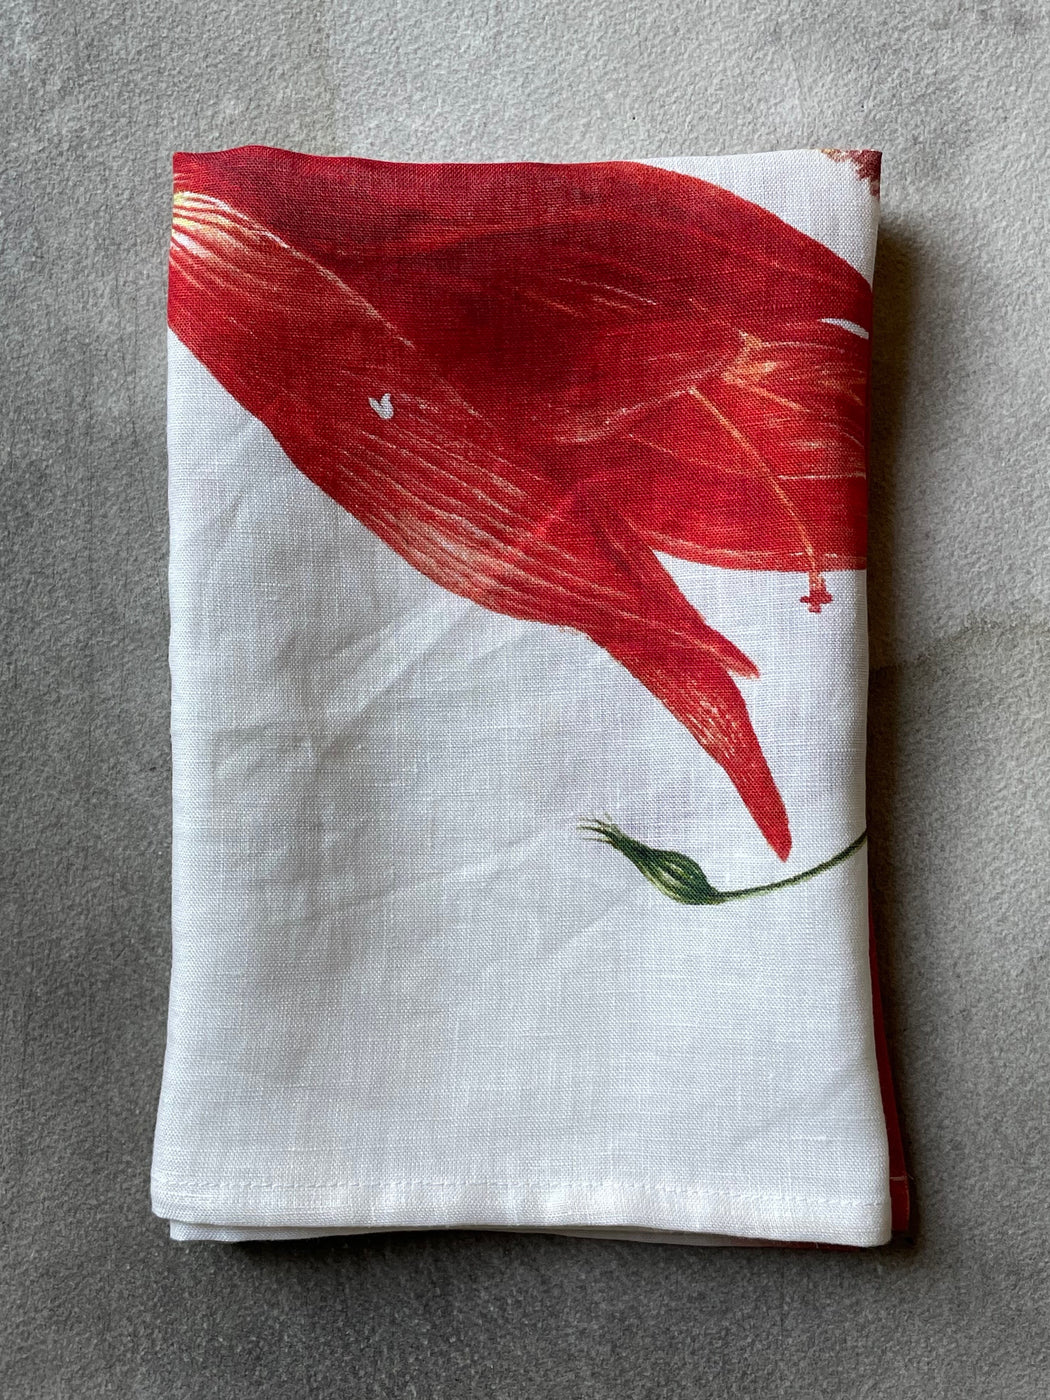 "Tulip" Tea Towel by Hellen van Berkel